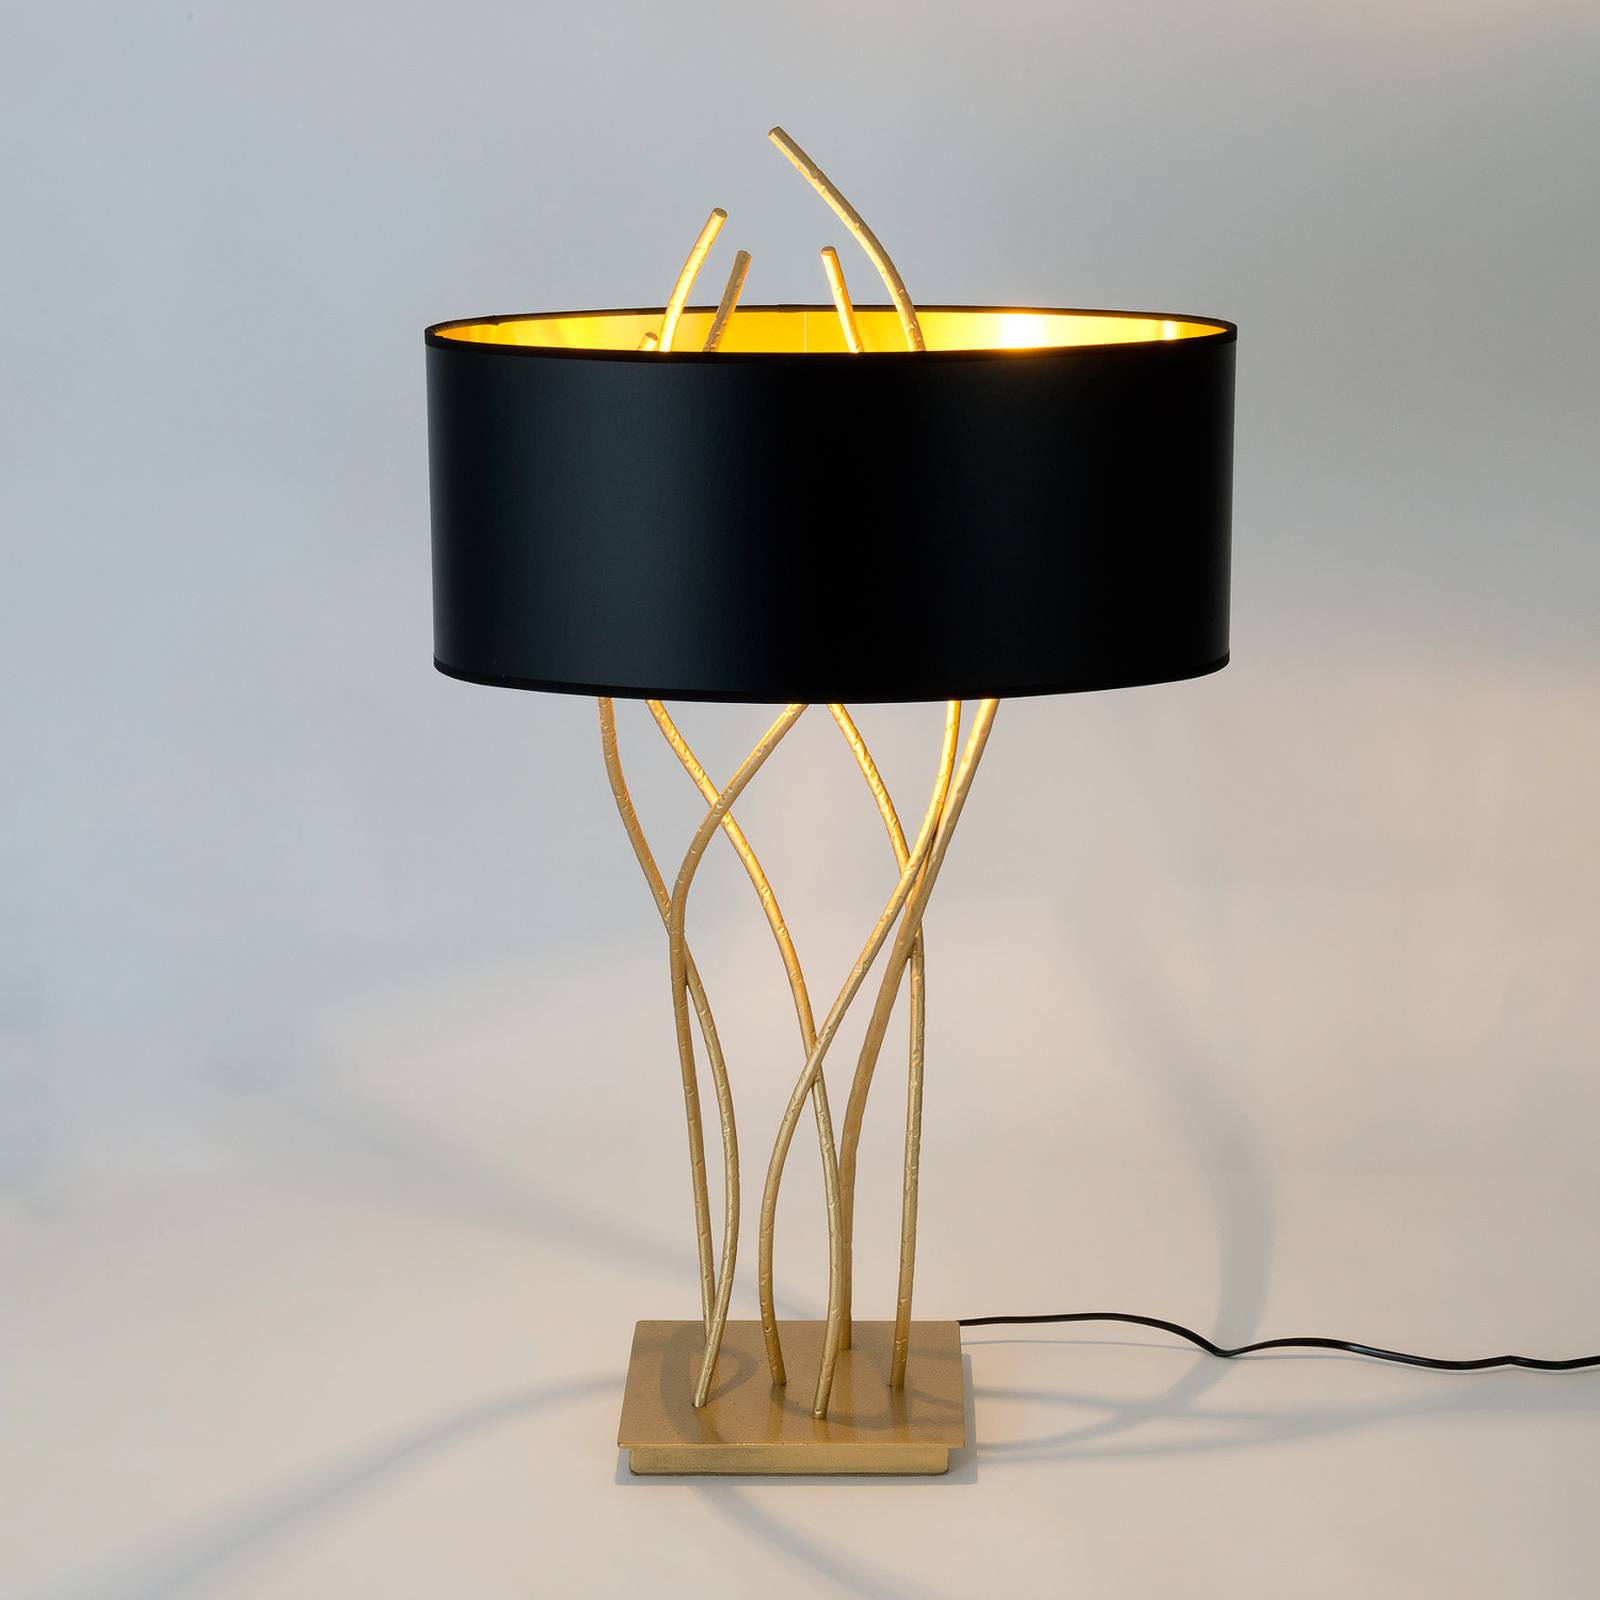 Holländer elba ovális asztali lámpa, arany/fekete, magasság 75 cm, vas